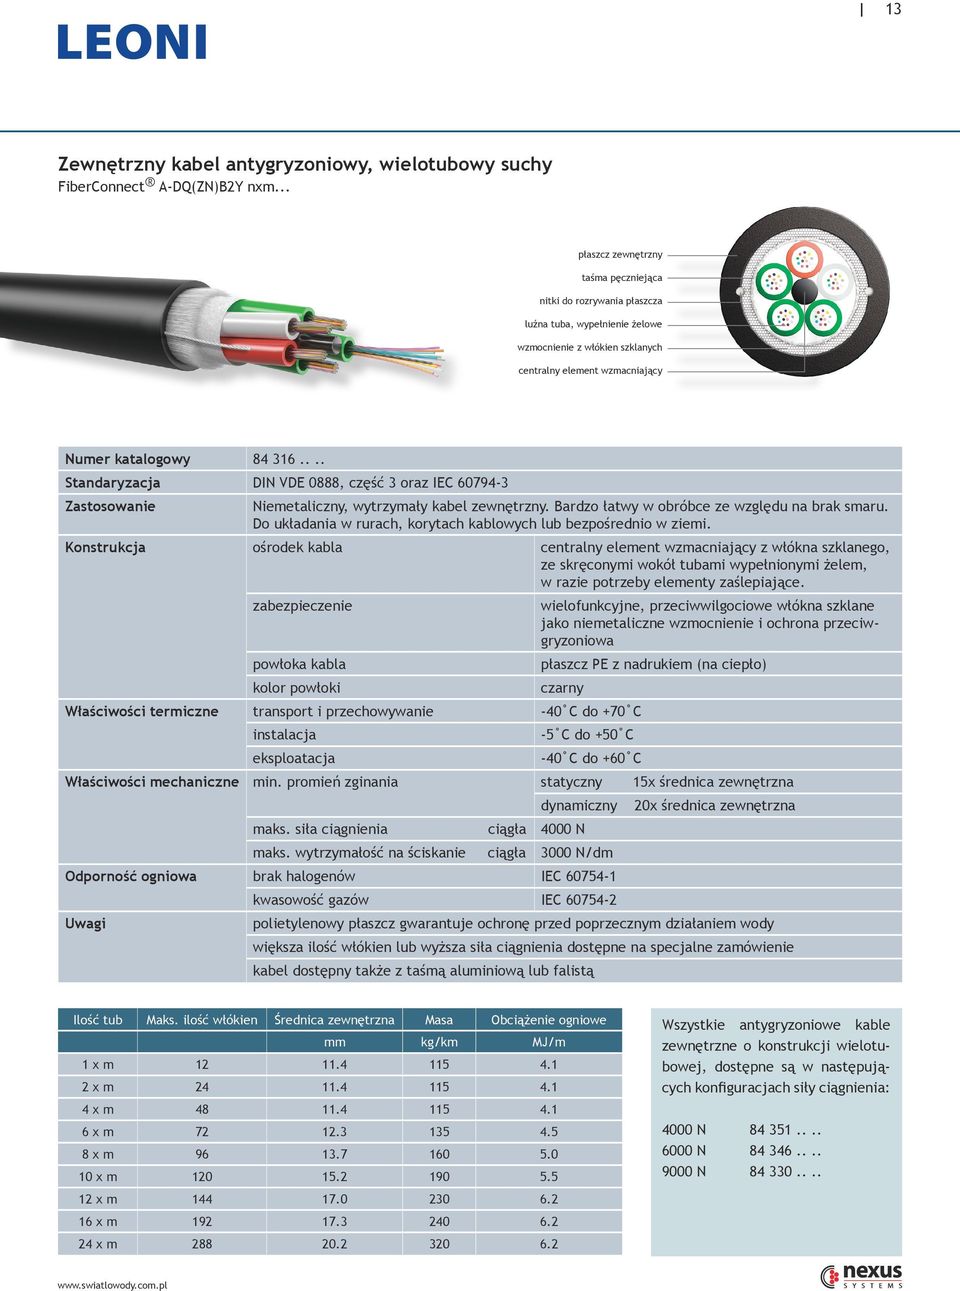 ... Standaryzacja DIN VDE 0888, część 3 oraz IEC 60794-3 Zastosowanie Niemetaliczny, wytrzymały kabel zewnętrzny. Bardzo łatwy w obróbce ze względu na brak smaru.